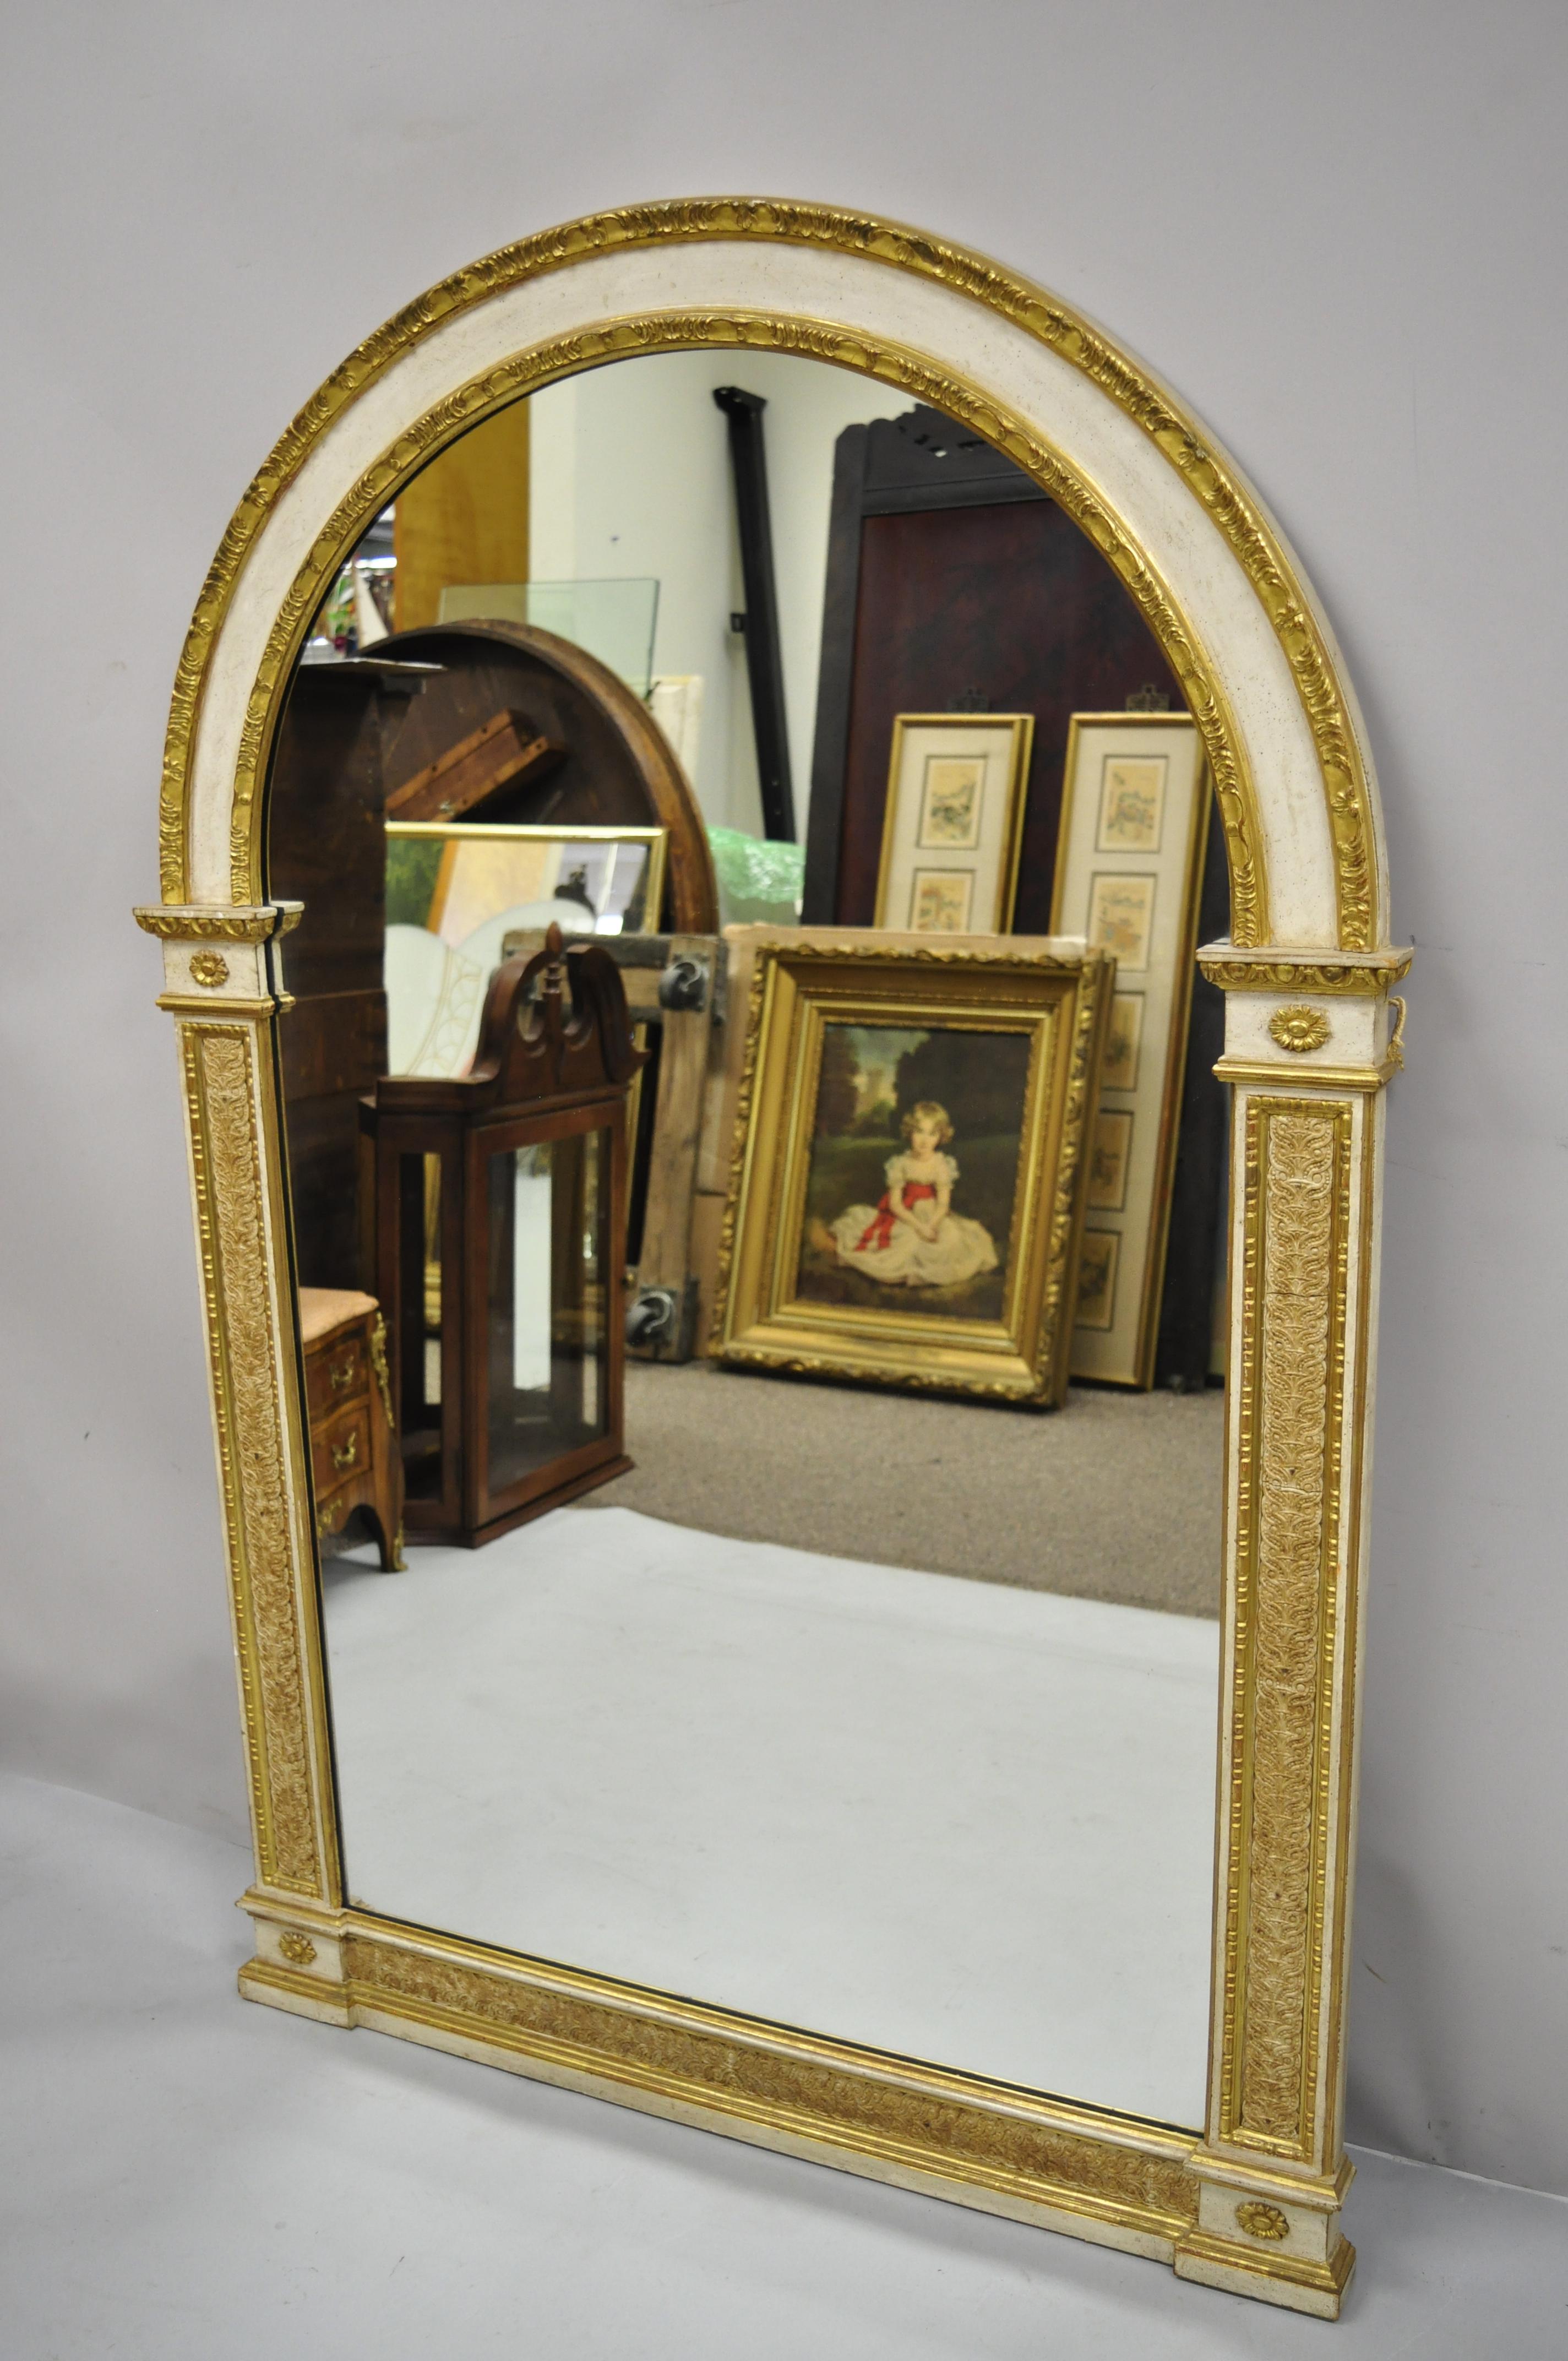 Antique miroir de console néoclassique italien sculpté et doré à l'or fin, avec un grand trumeau. Cet article se caractérise par son sommet arqué, sa grande taille, son cadre en bois massif, sa finition dorée et vieillie, ses détails joliment